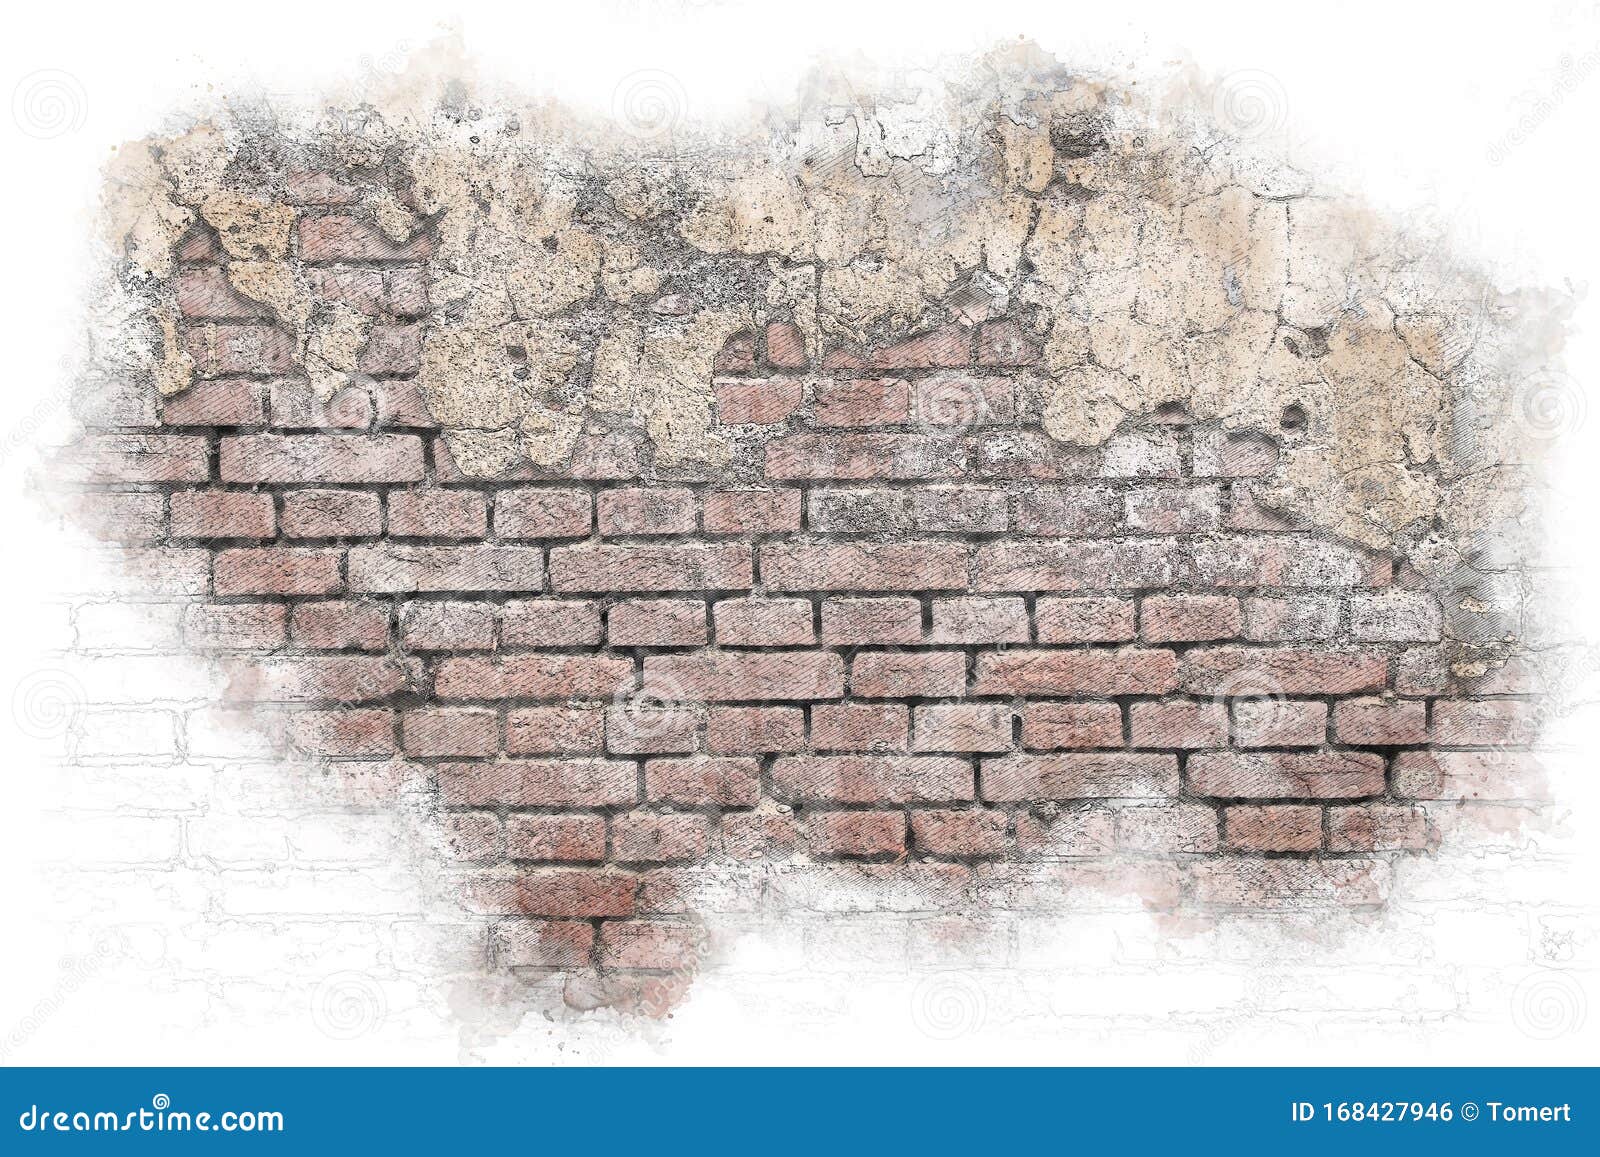 100 Broken Brick Wall Drawing Illustrations RoyaltyFree Vector Graphics   Clip Art  iStock